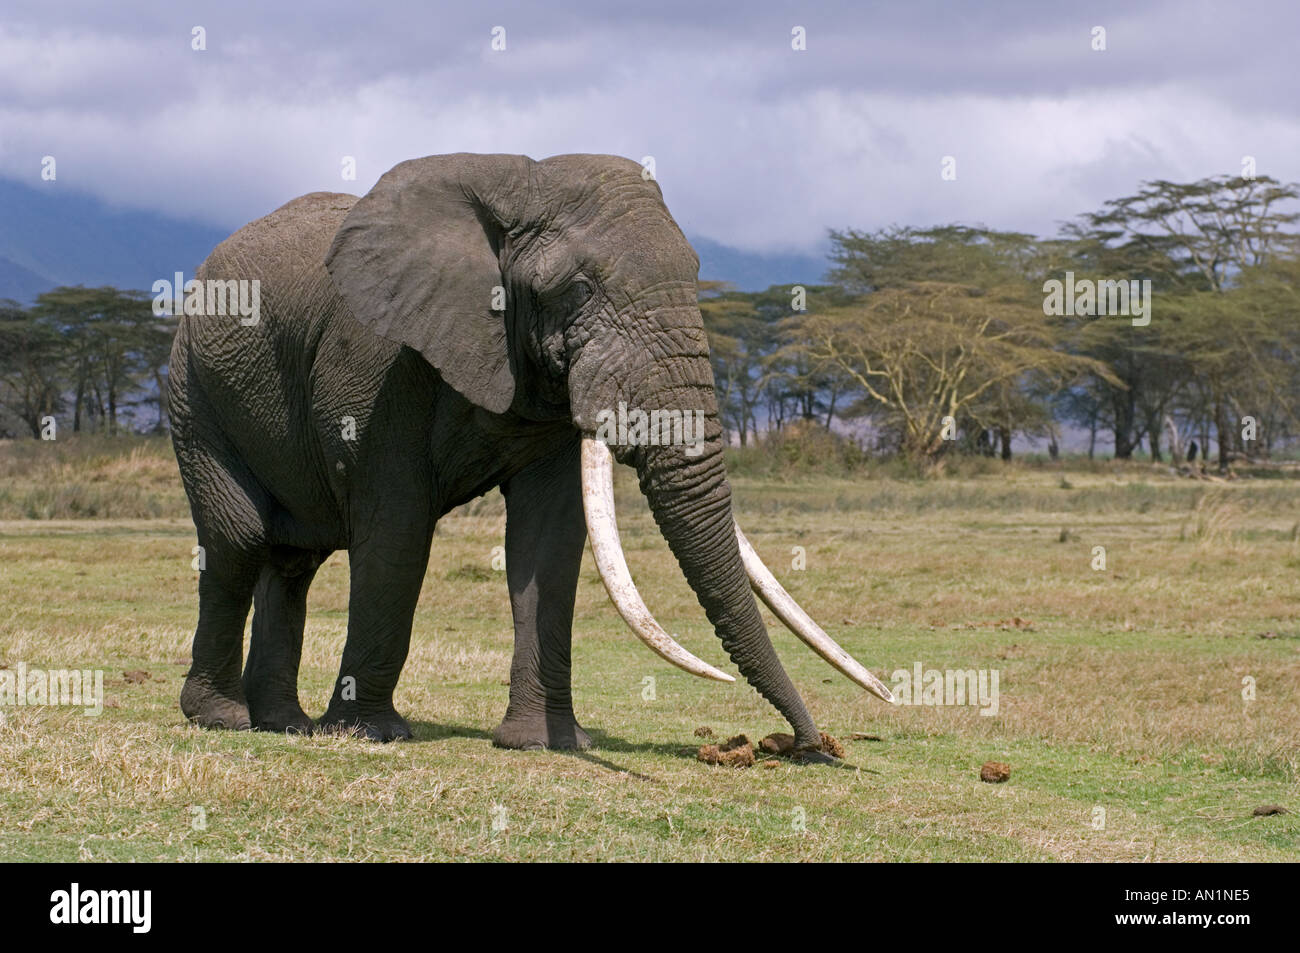 African elephant sniffing elephant dung Ngorongoro Crater, Tanzania Stock Photo